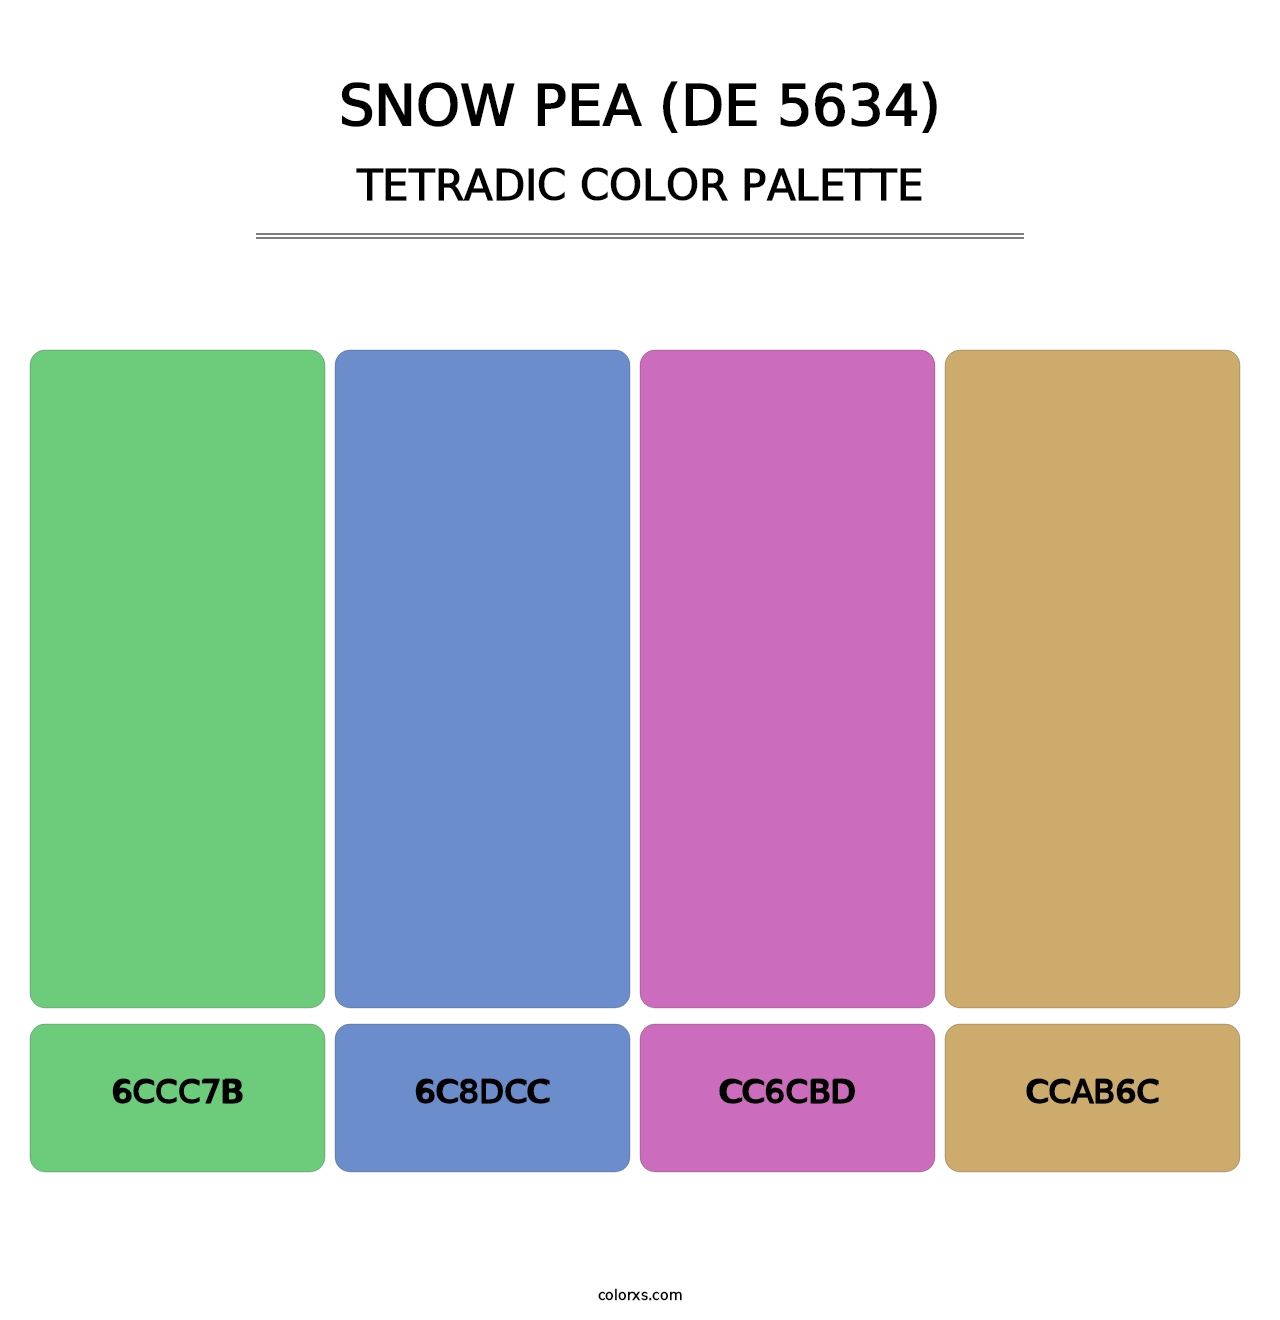 Snow Pea (DE 5634) - Tetradic Color Palette